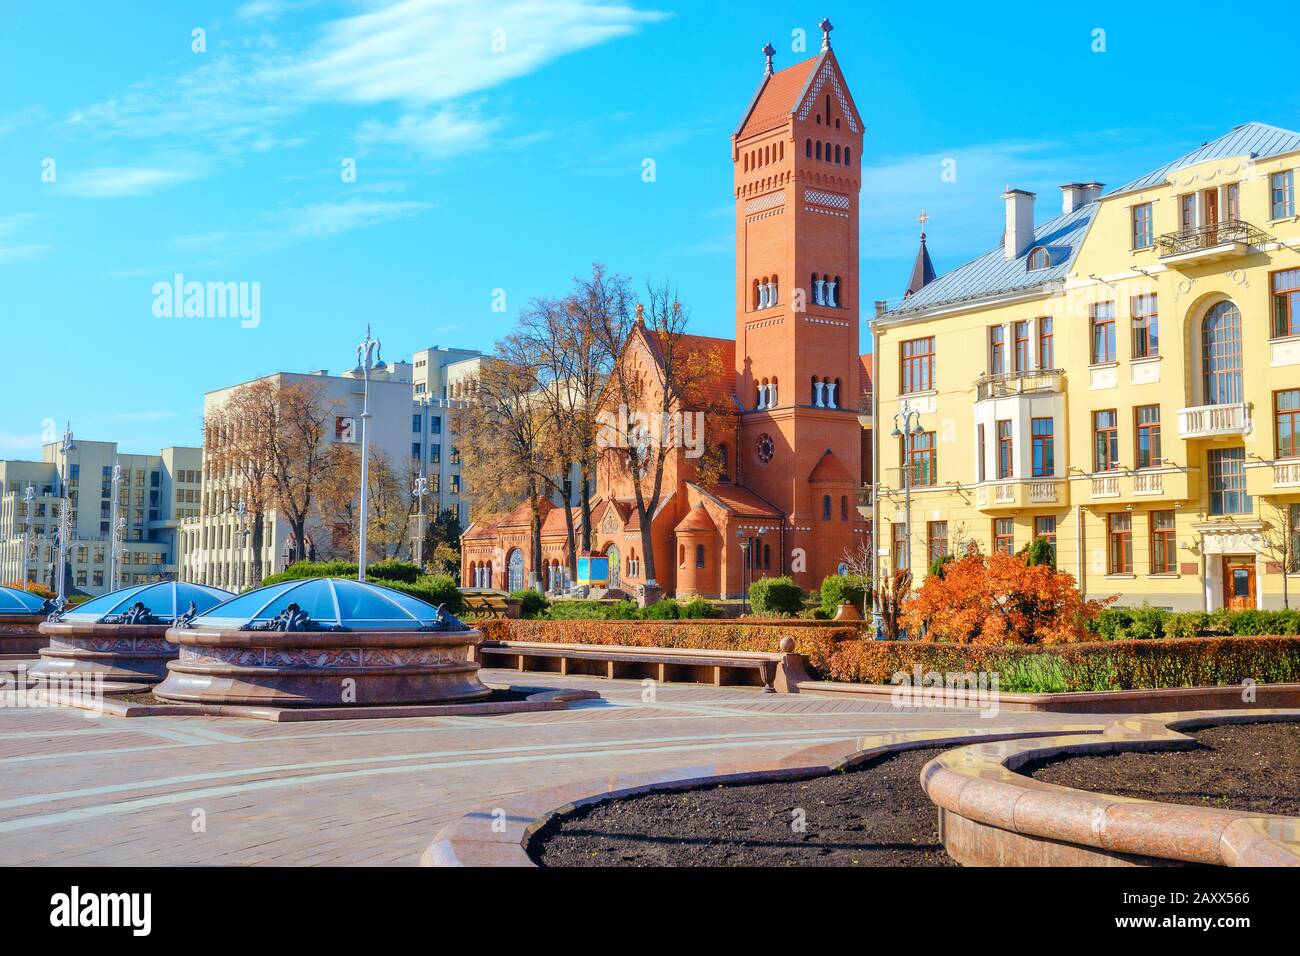 Place de l'indépendance avec dômes en verre et vue sur l'église catholique Saint-Simon et Sainte-Hélène (église rouge) à Minsk. Biélorussie Banque D'Images